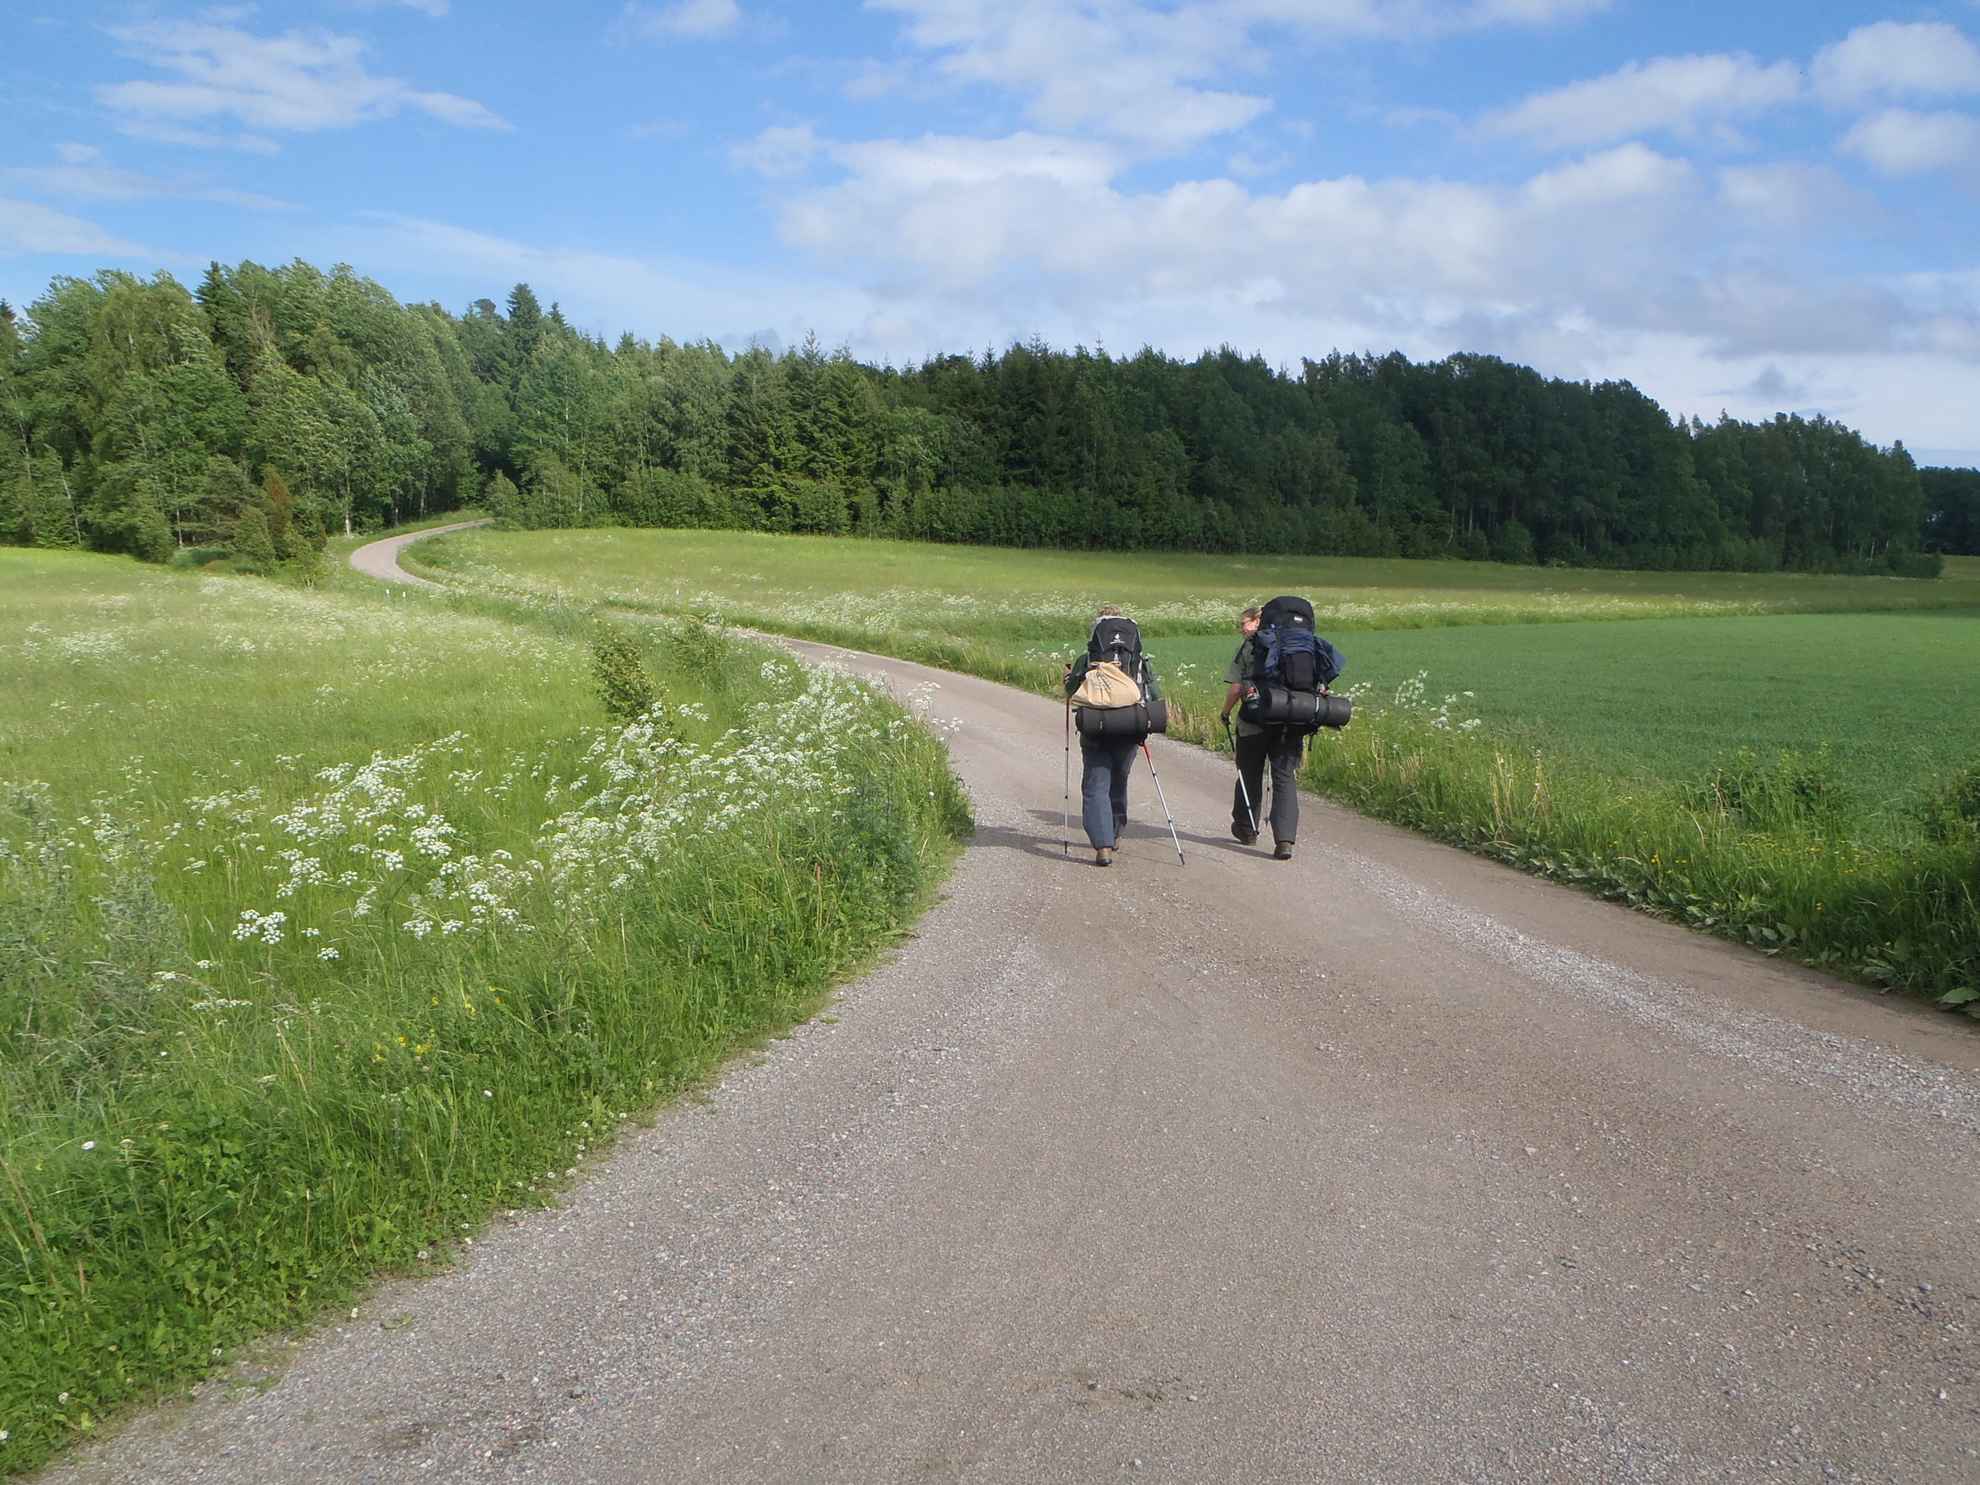 Twee mensen met grote rugzakken lopen over een grindweg omgeven door grasvelden.